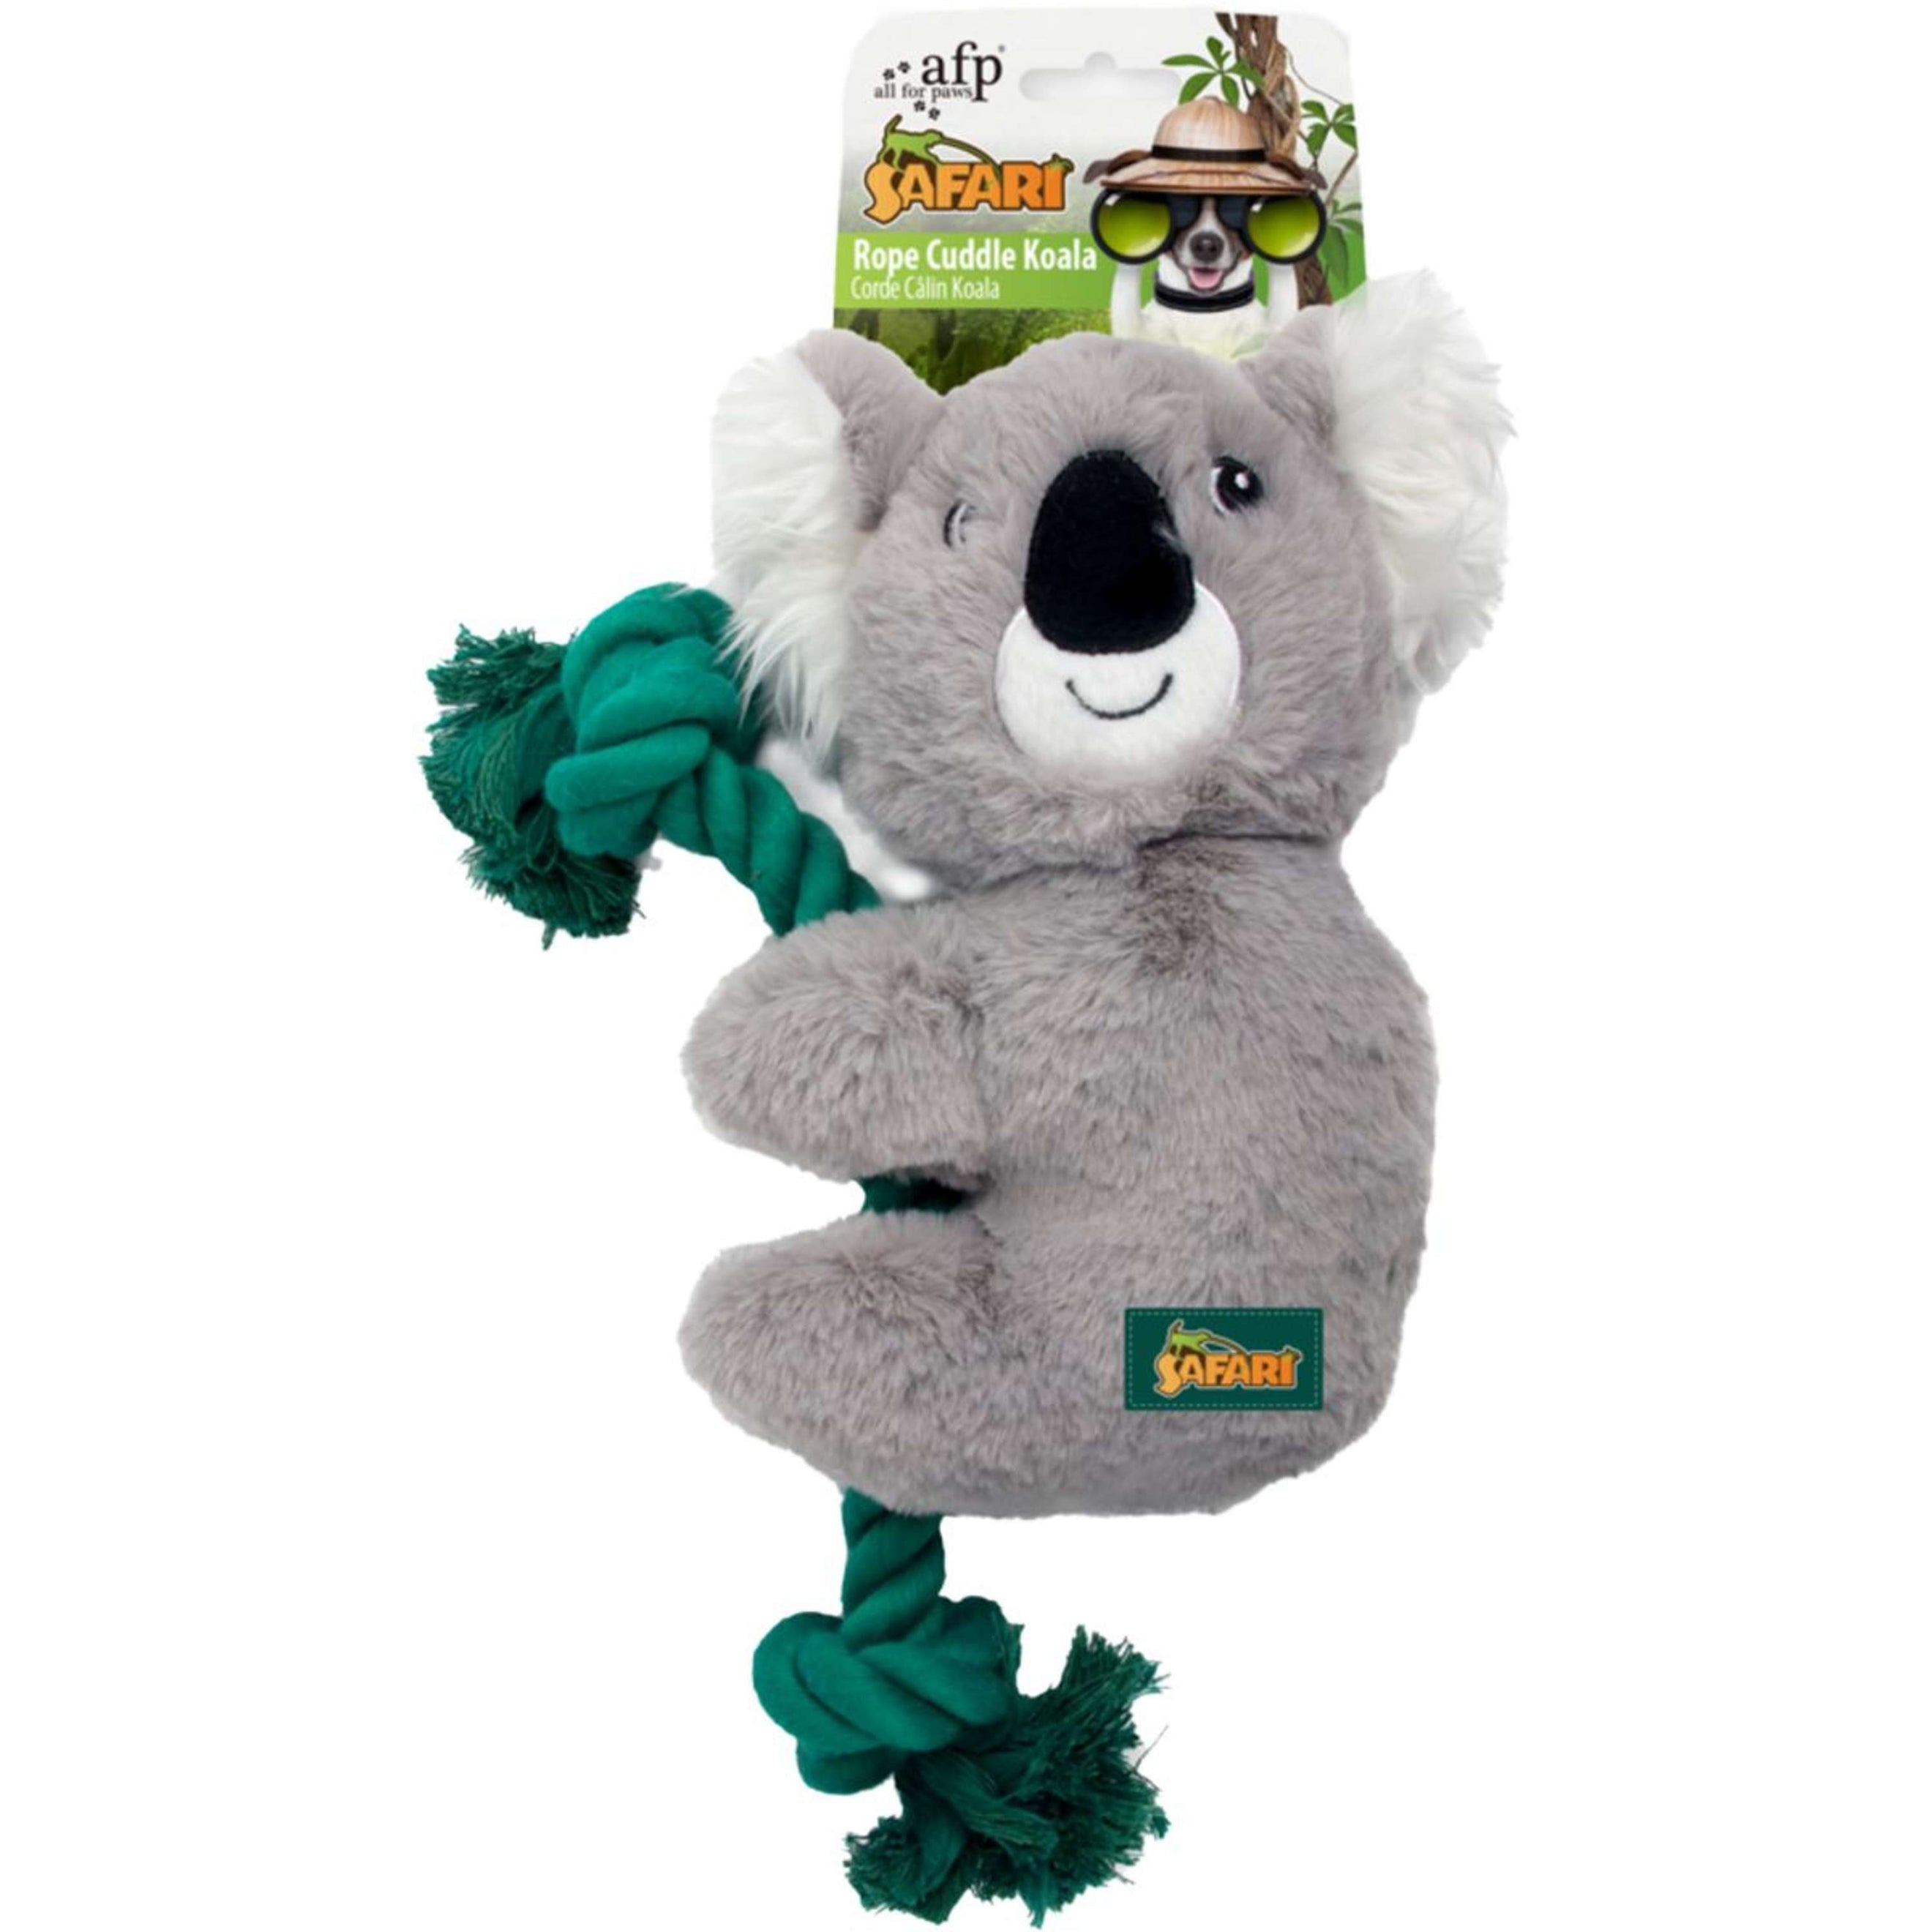 All for Paws Safari Rope Cuddle Koala